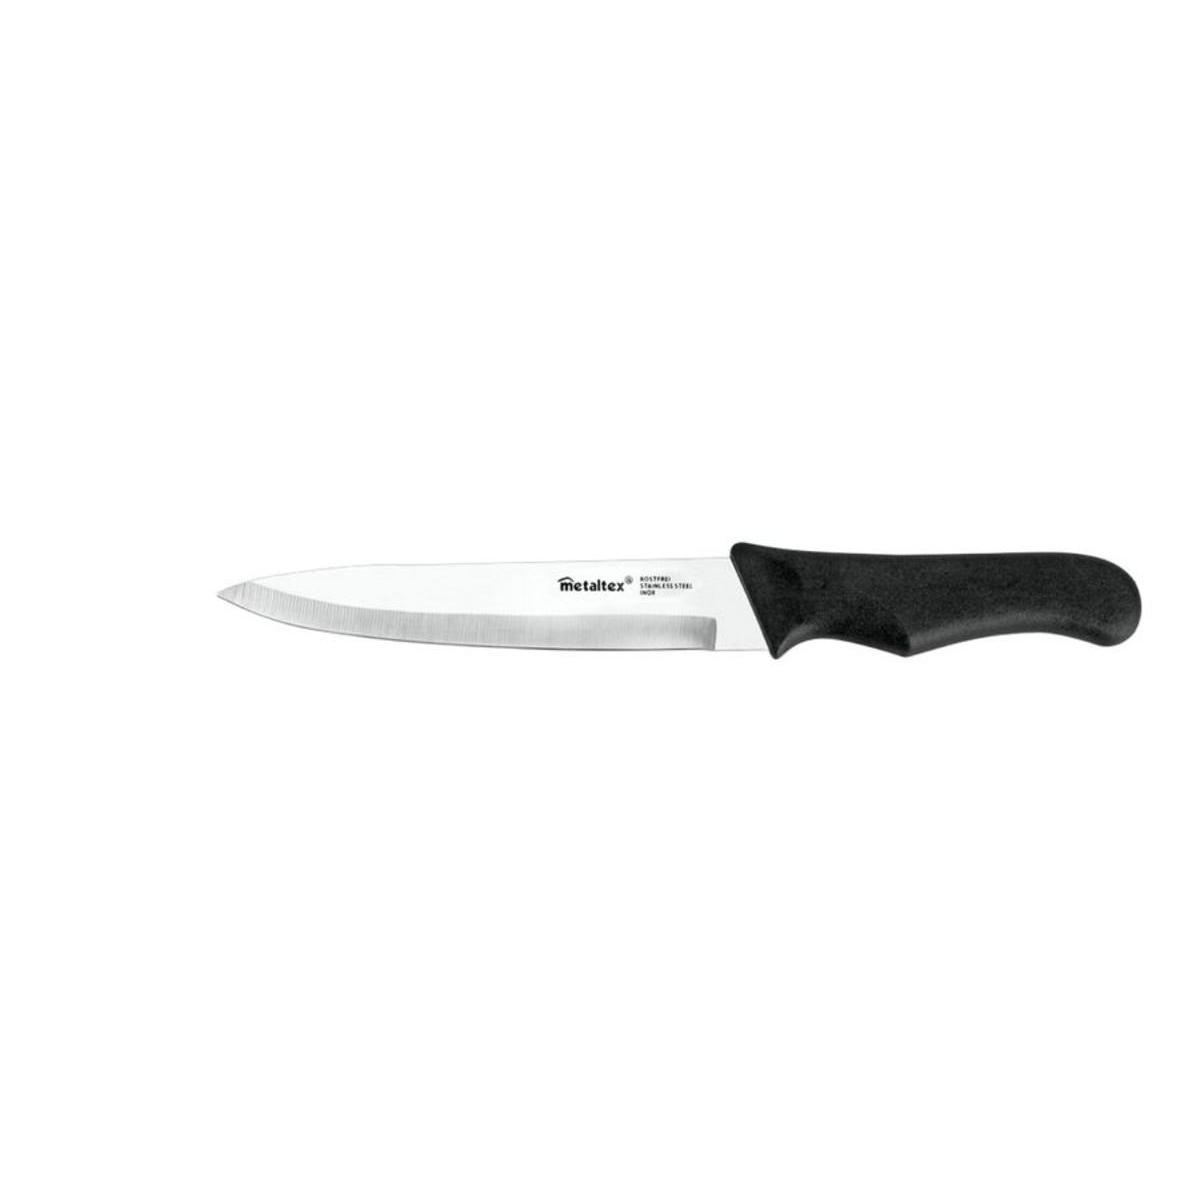 Couteau du chef - Acier inoxydable et plastique - 34 x 6,8 x 1,8 cm - Gris et noir